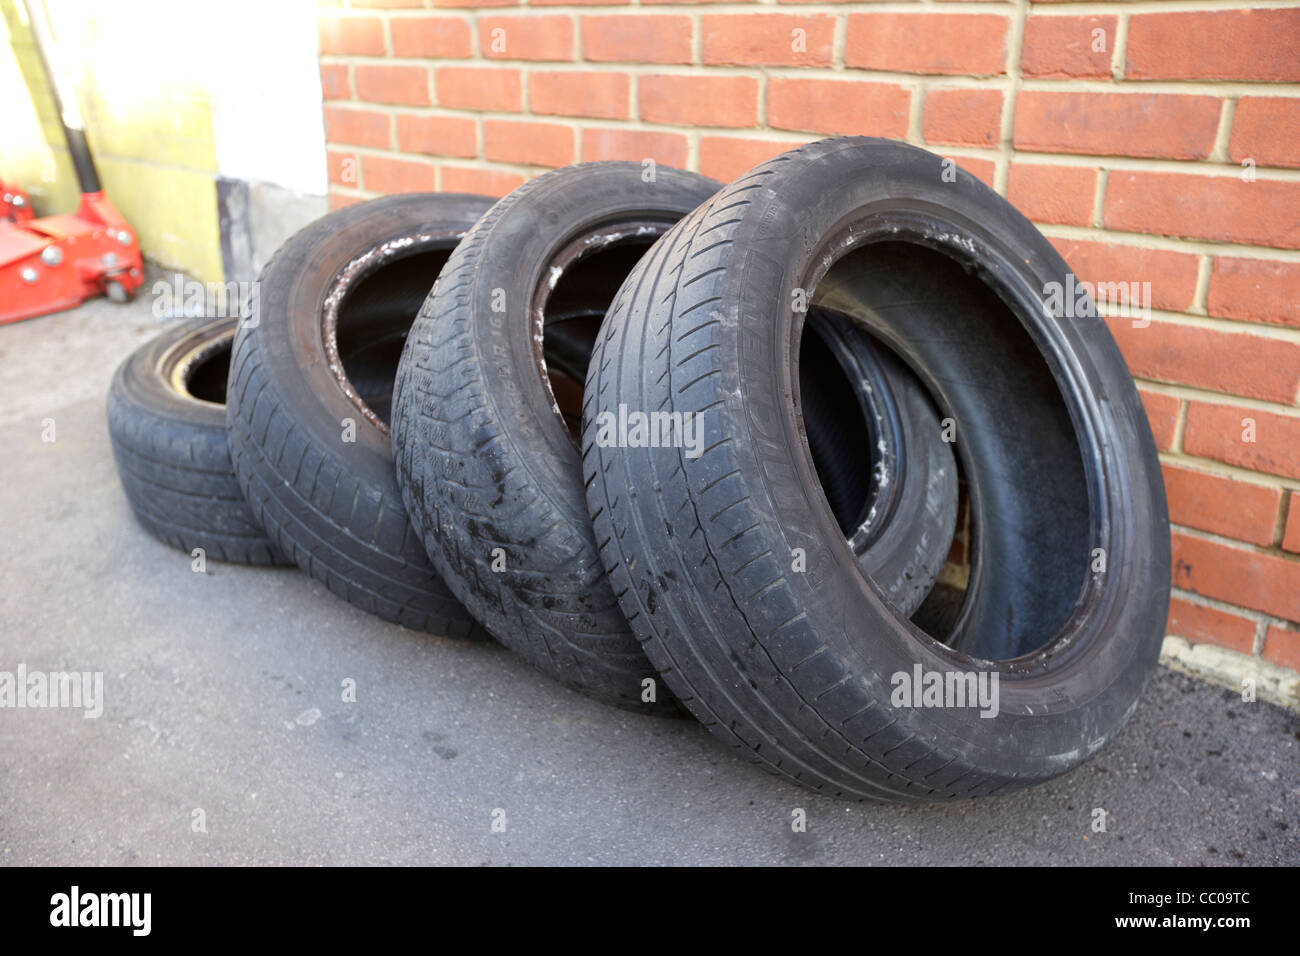 Partie quatre vieux pneus usés utilisés se trouvant à l'extérieur d'un garage à Londres Angleterre Royaume-Uni Royaume-Uni Banque D'Images